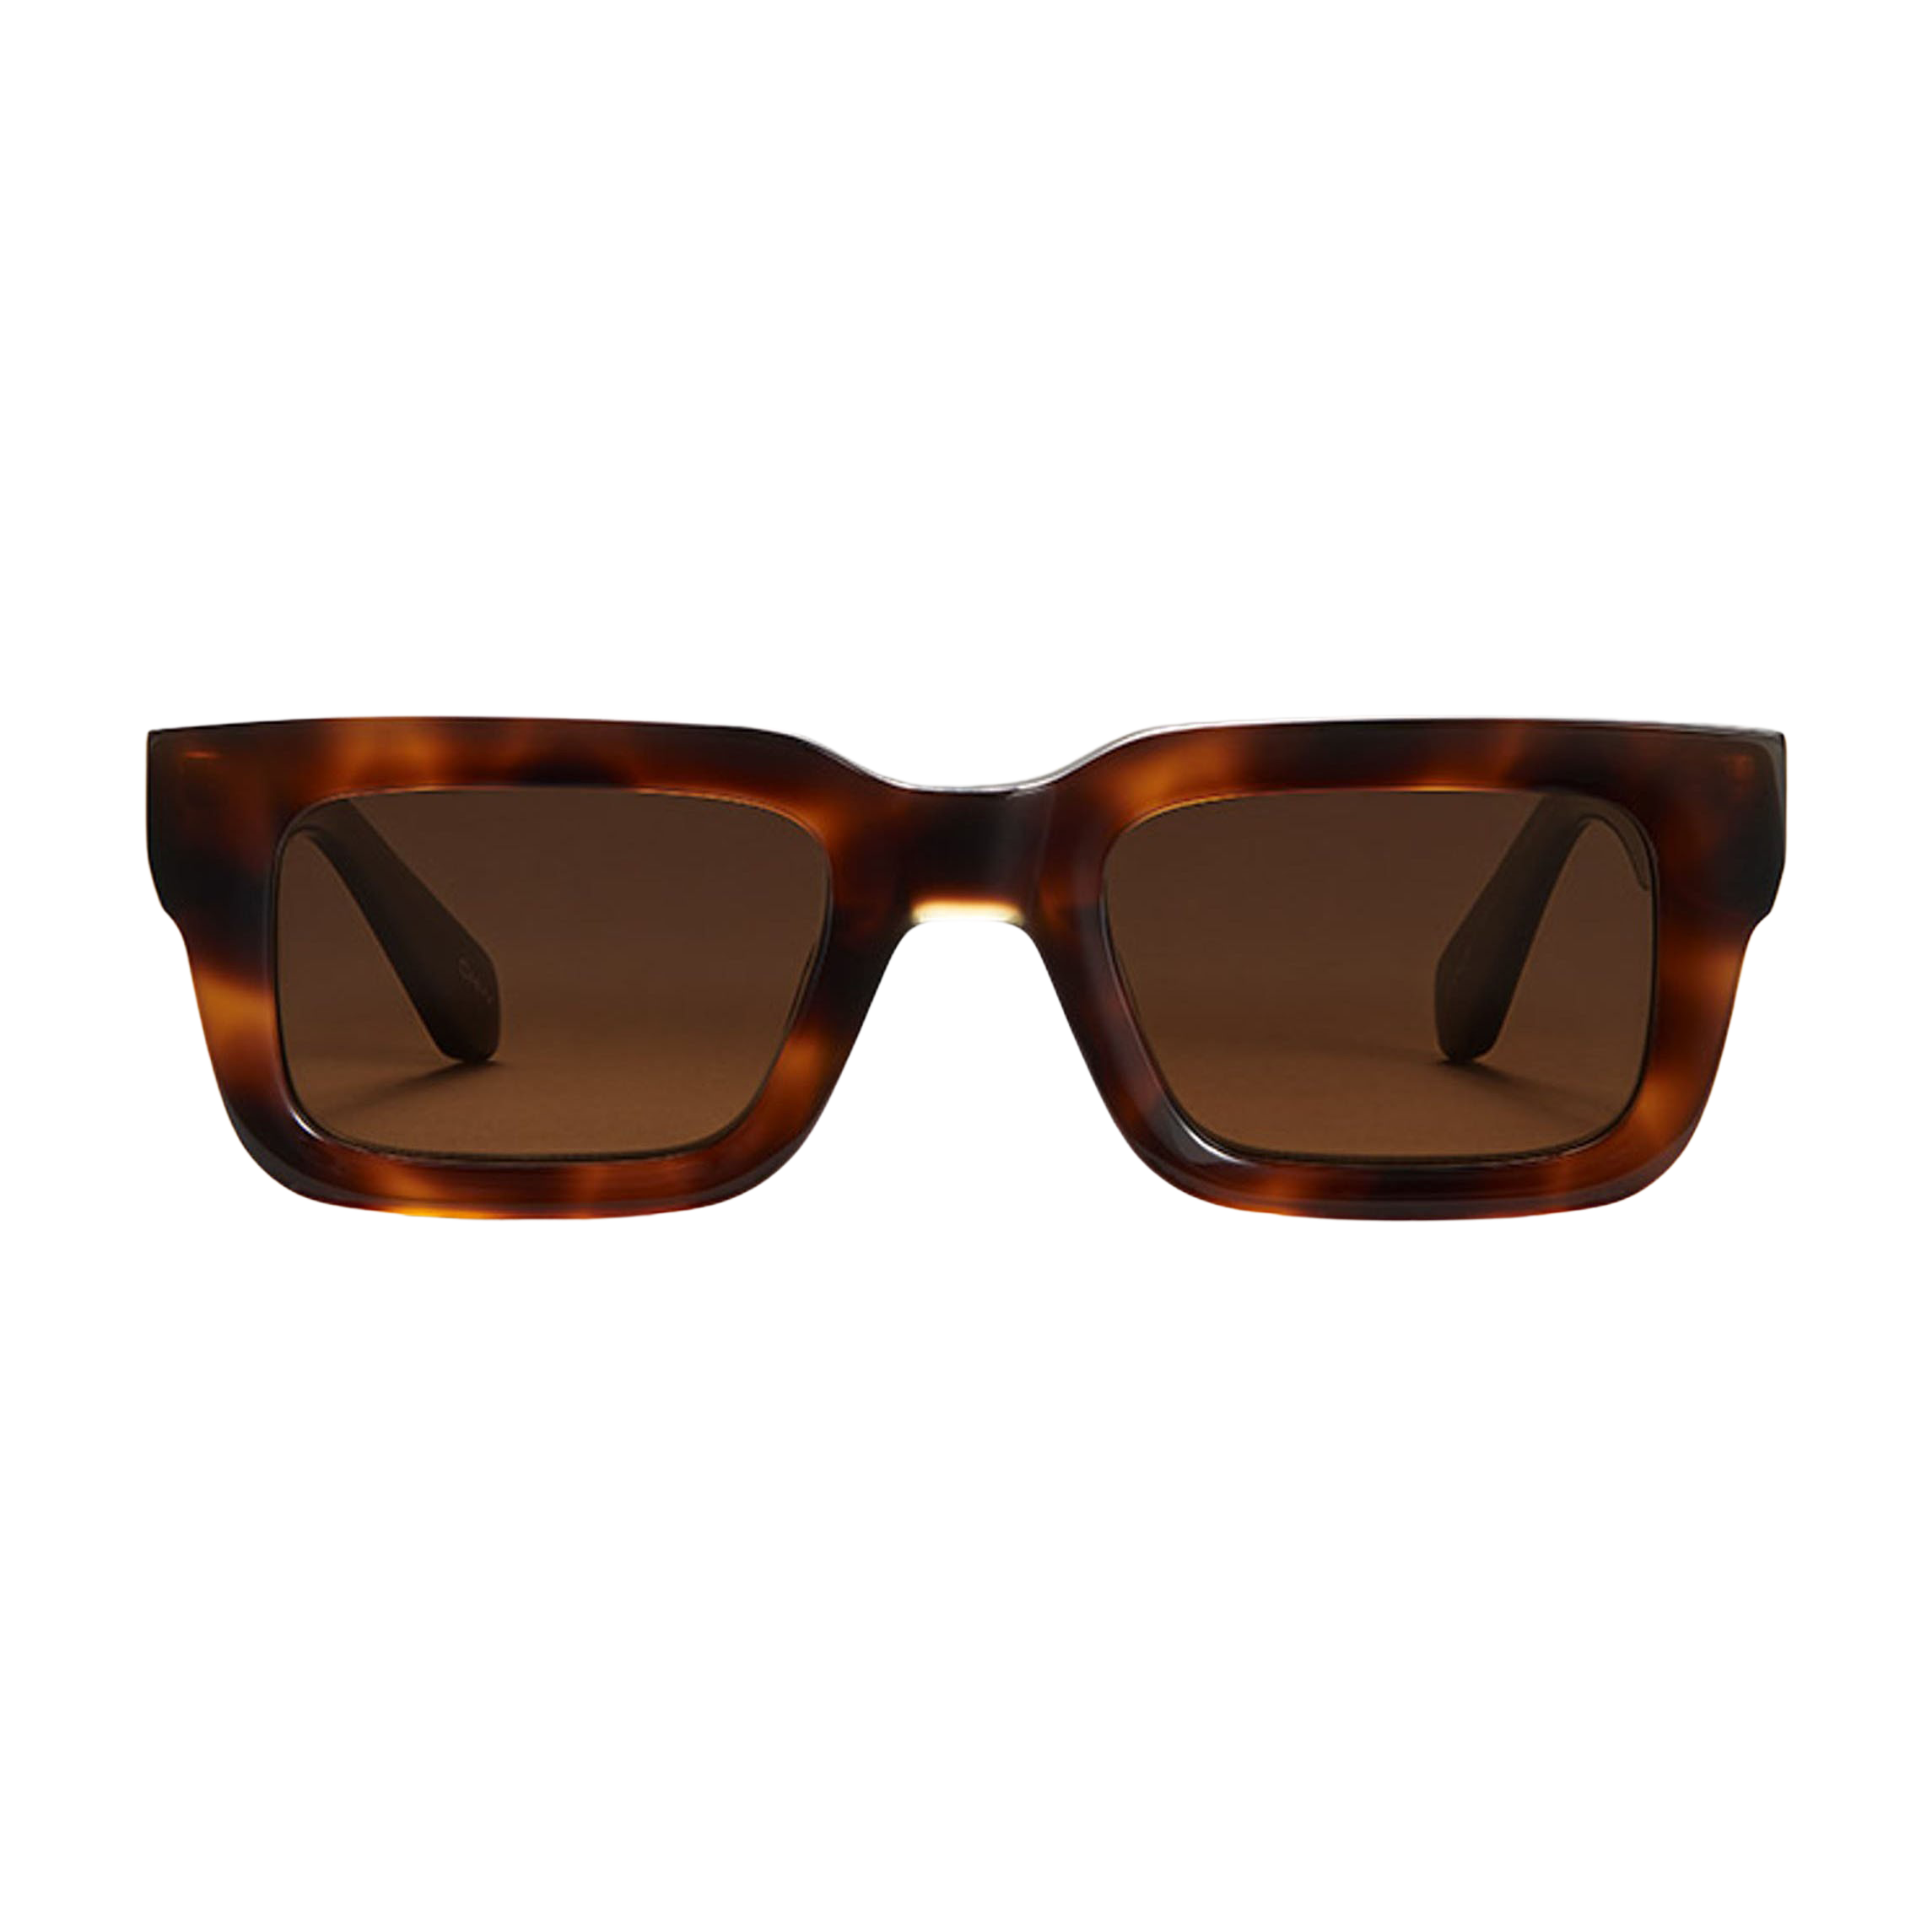 Chimi Eyewear Model 05 Tortoise Brown Lenses Sunglasses 48mm Front